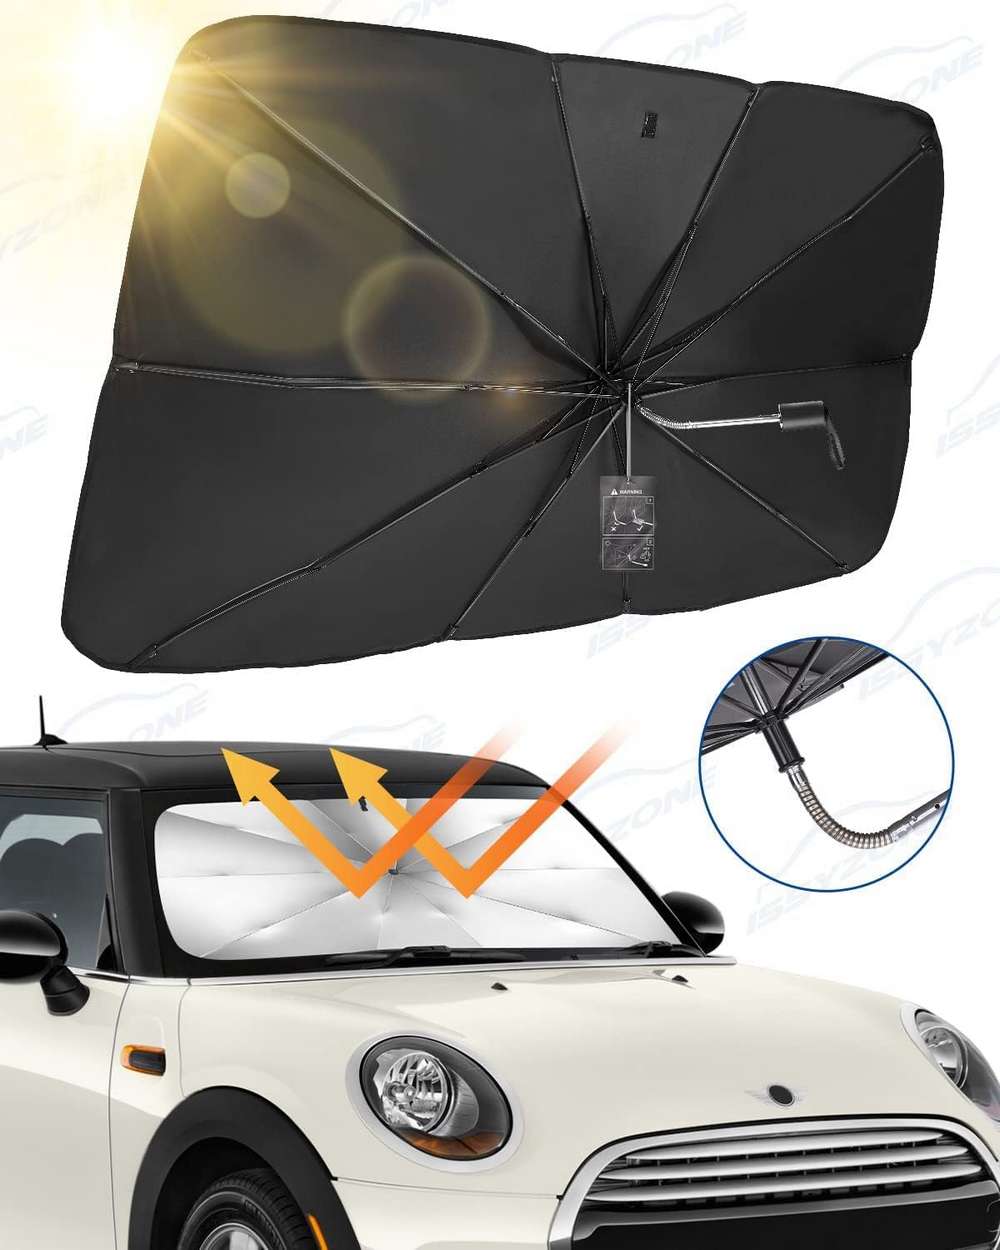 parasol-para-parabrisas-de-coche-issyzone-esa1916-00601.jpg